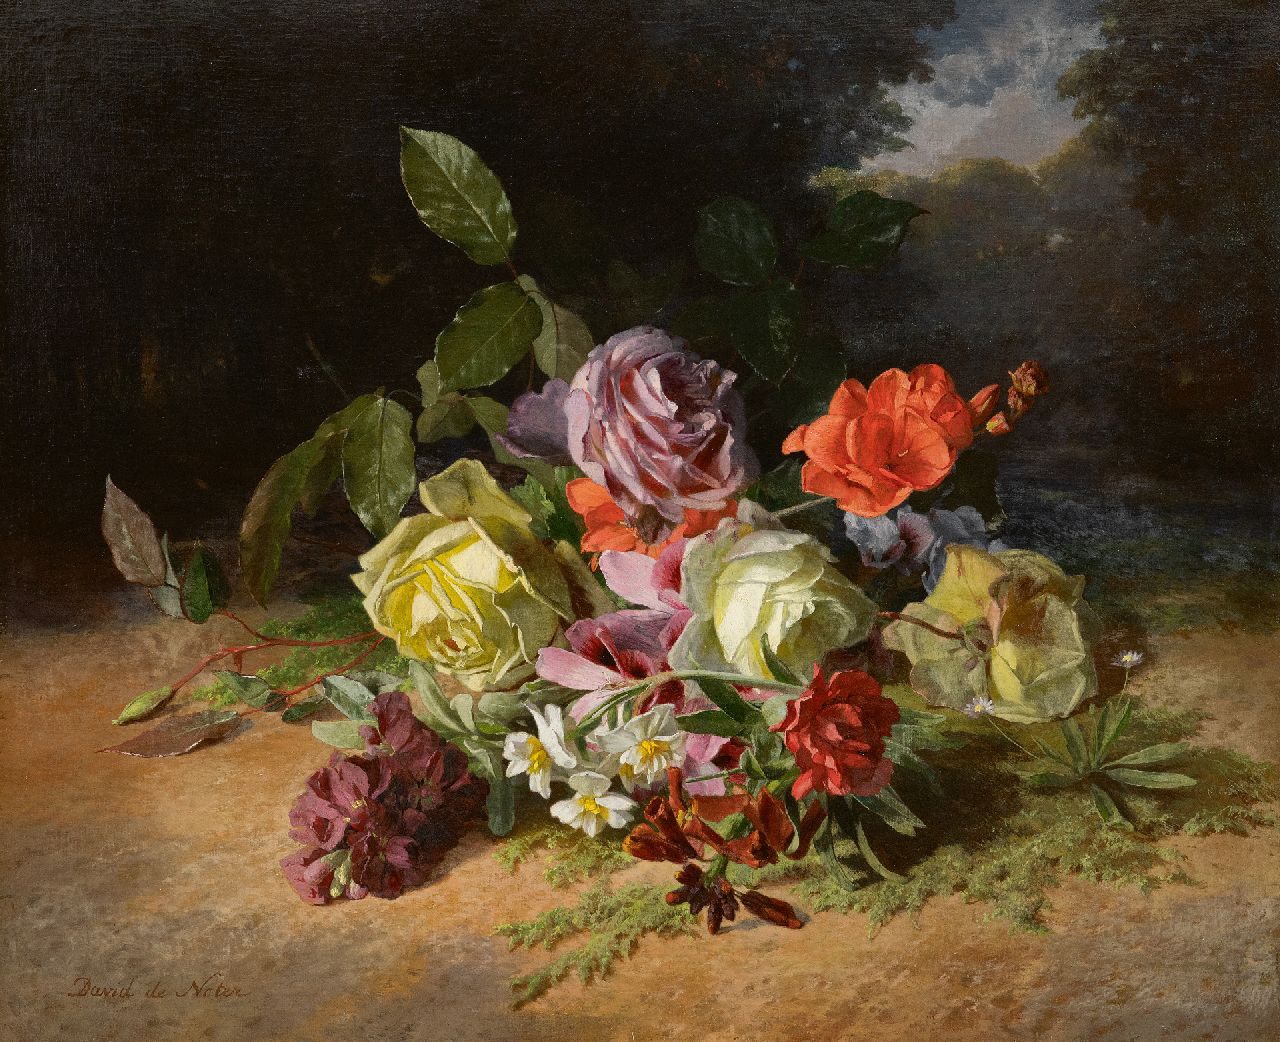 Noter D.E.J. de | 'David' Emile Joseph de Noter | Schilderijen te koop aangeboden | Rozenboeket en zomerbloemen op de bosgrond, olieverf op doek 46,3 x 55,1 cm, gesigneerd linksonder